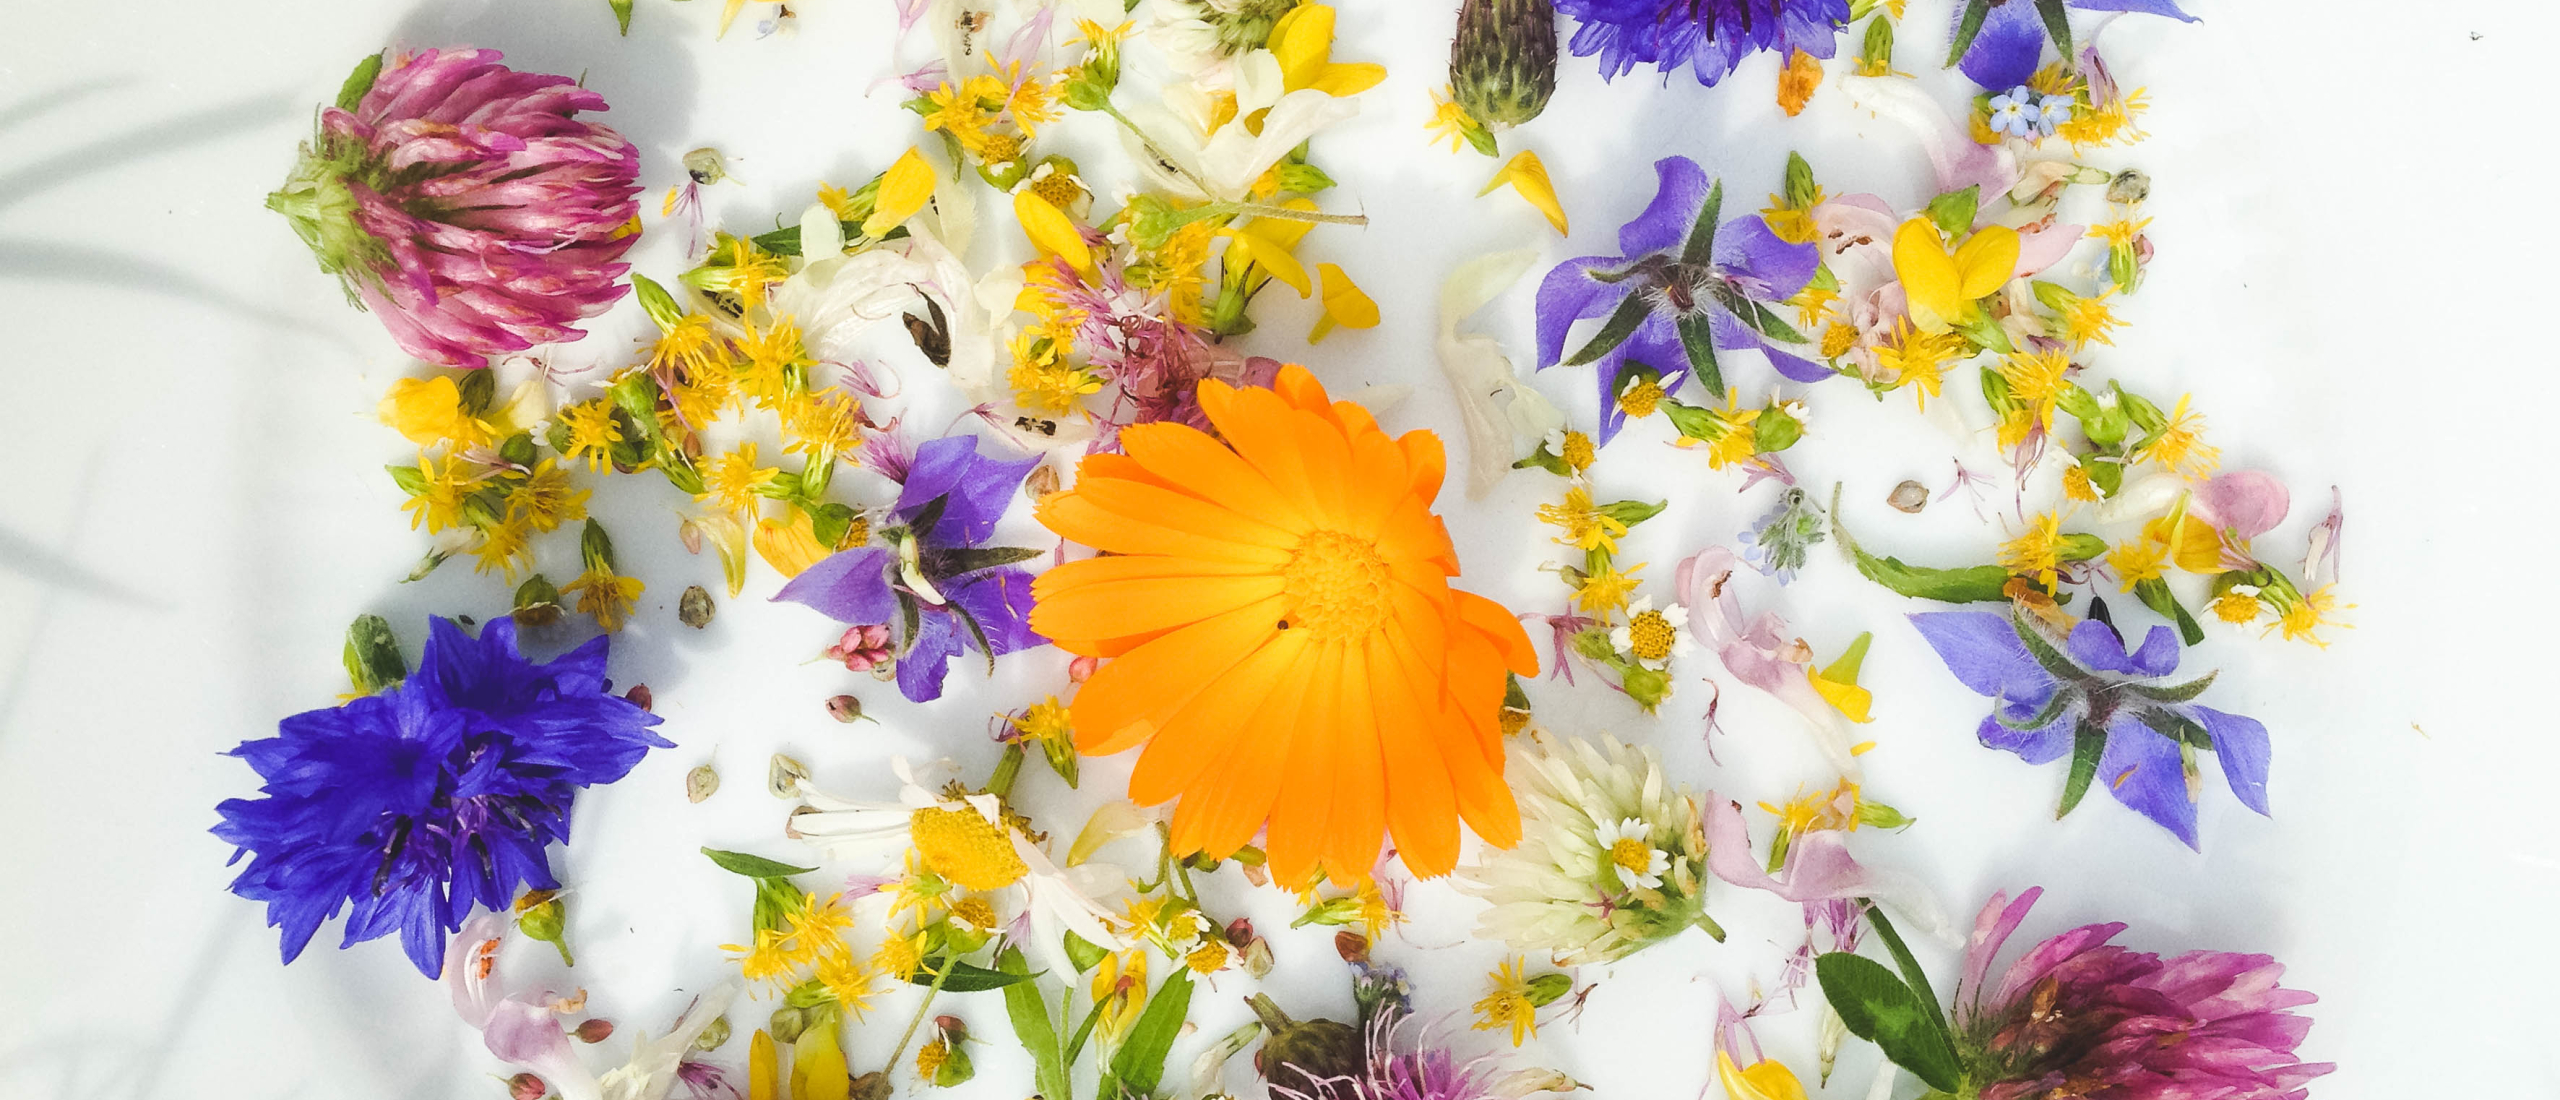 Wildpluk gratis eetbare bloemen - oogsten - bewaren - in de keuken